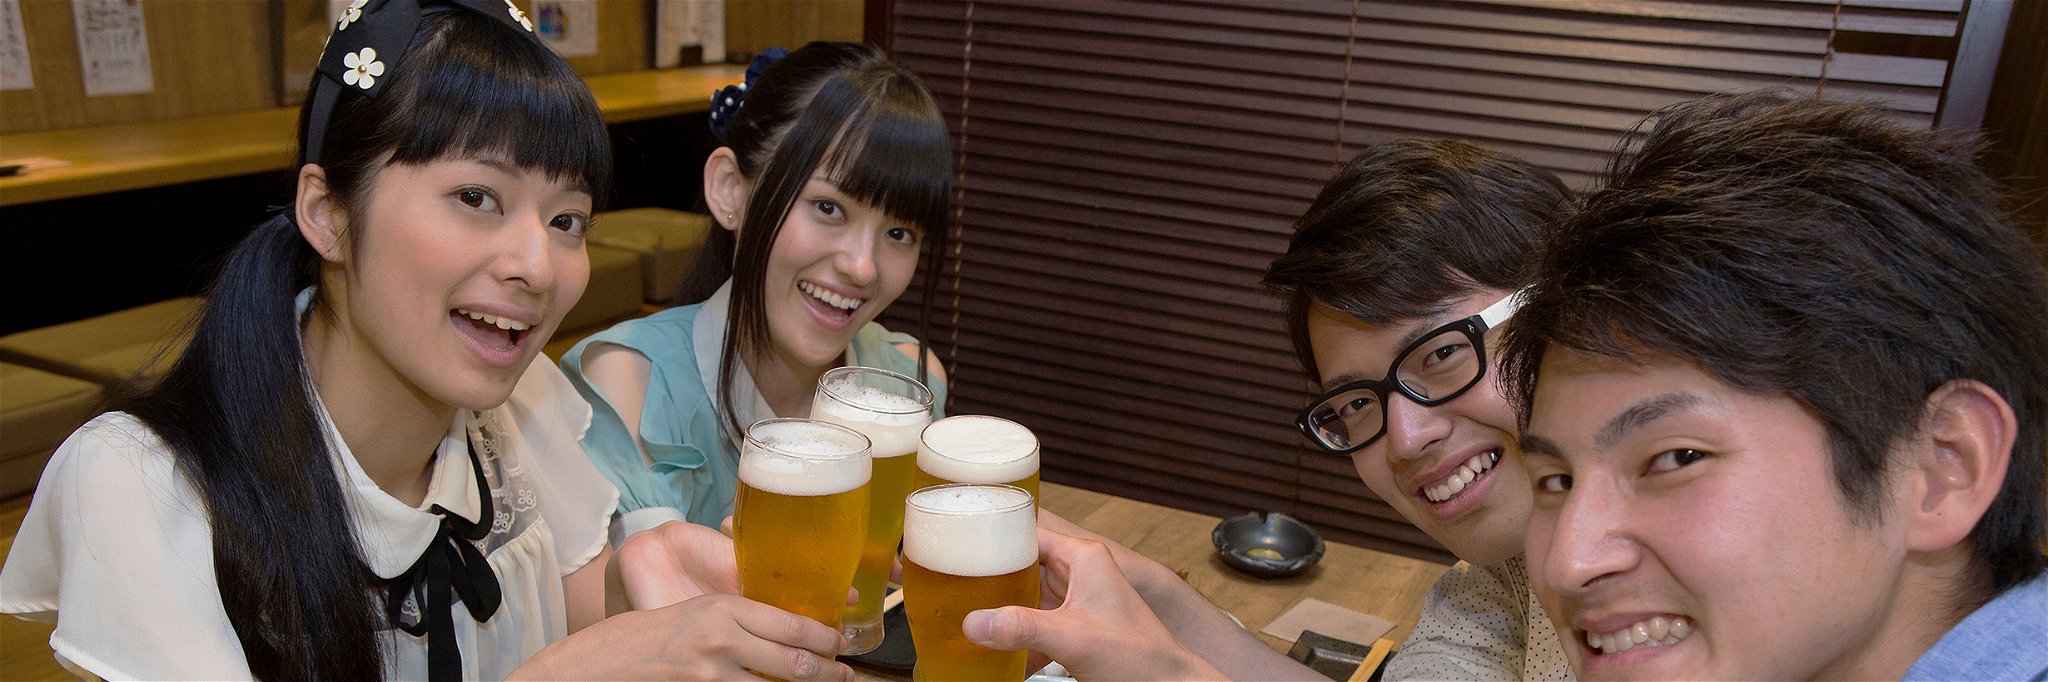 Bier und andere alkoholische Getränke sollen Japanern schmackhaft gemacht werden – der Staat braucht das Geld.